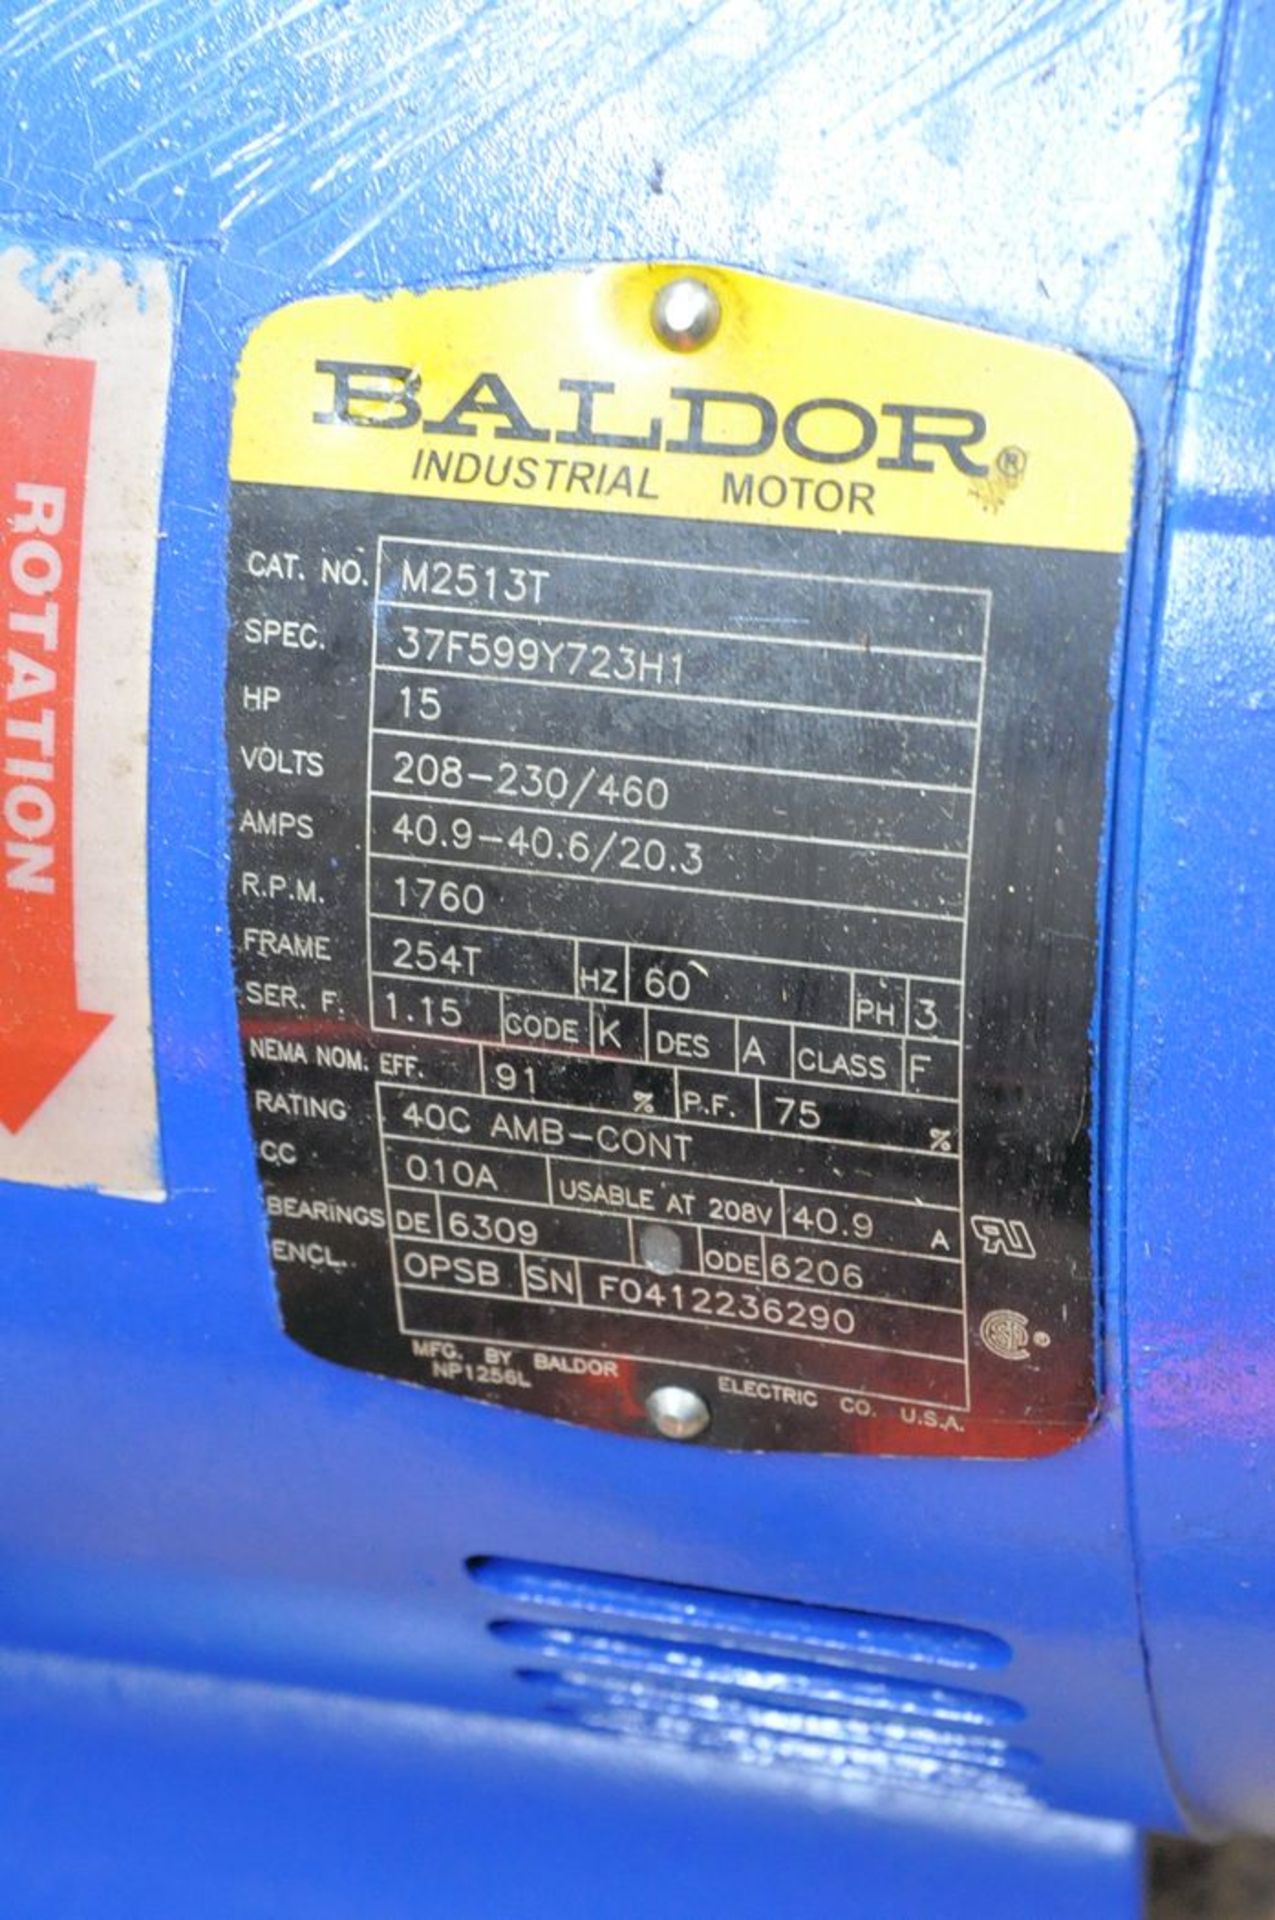 Baldor Cat No M2513T 15 HP Electric Motor, S/N F0412236290, 1,760 RPM, 3-PH - Image 2 of 2